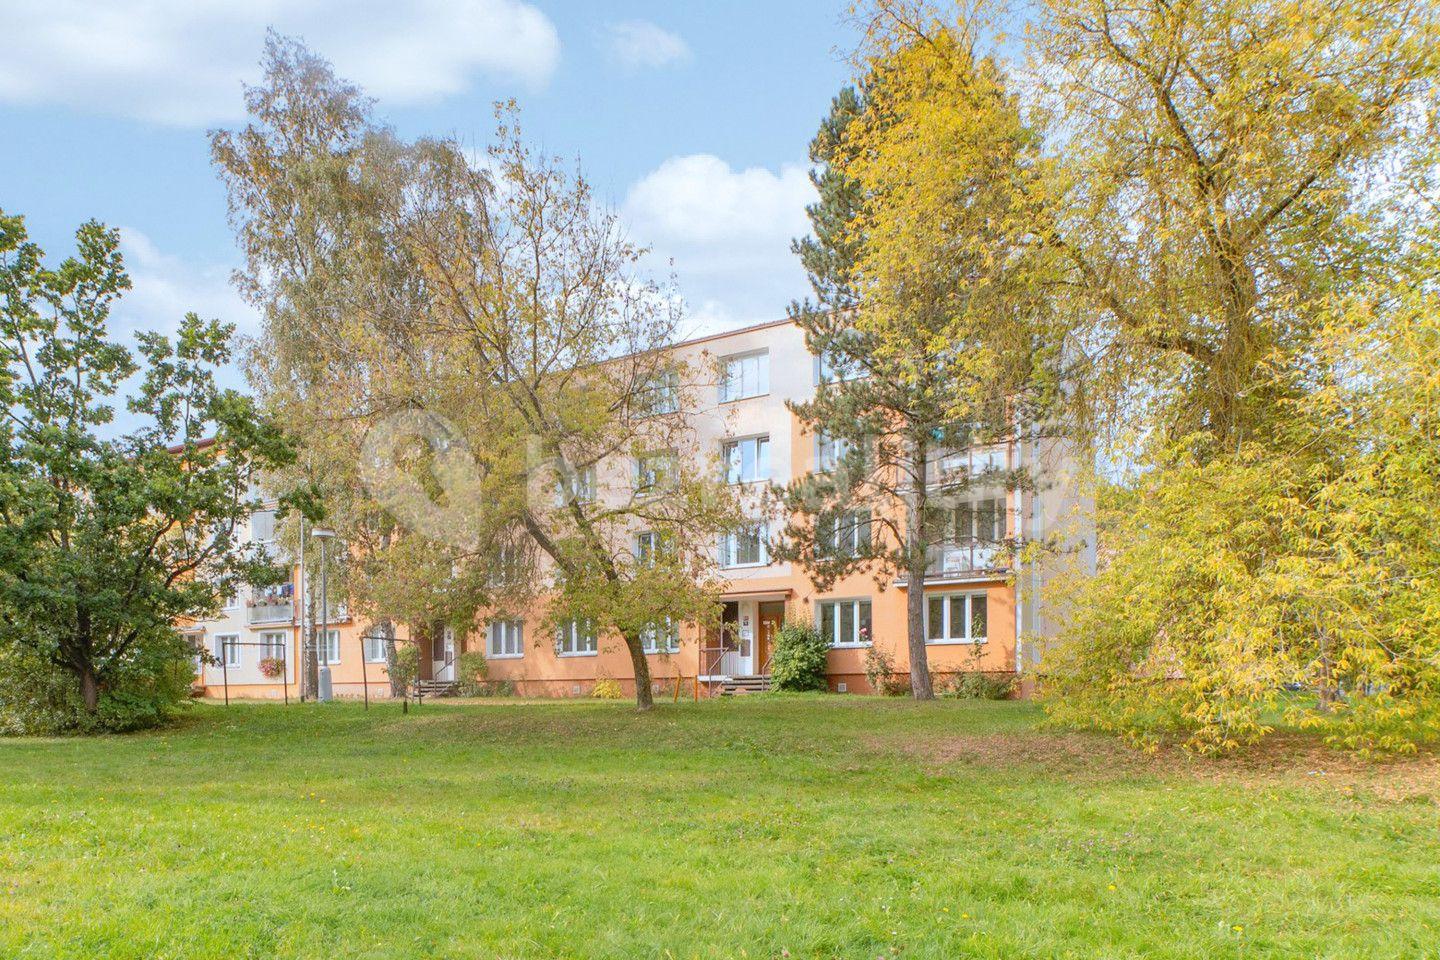 3 bedroom flat for sale, 67 m², Hroznatova, Mariánské Lázně, Karlovarský Region